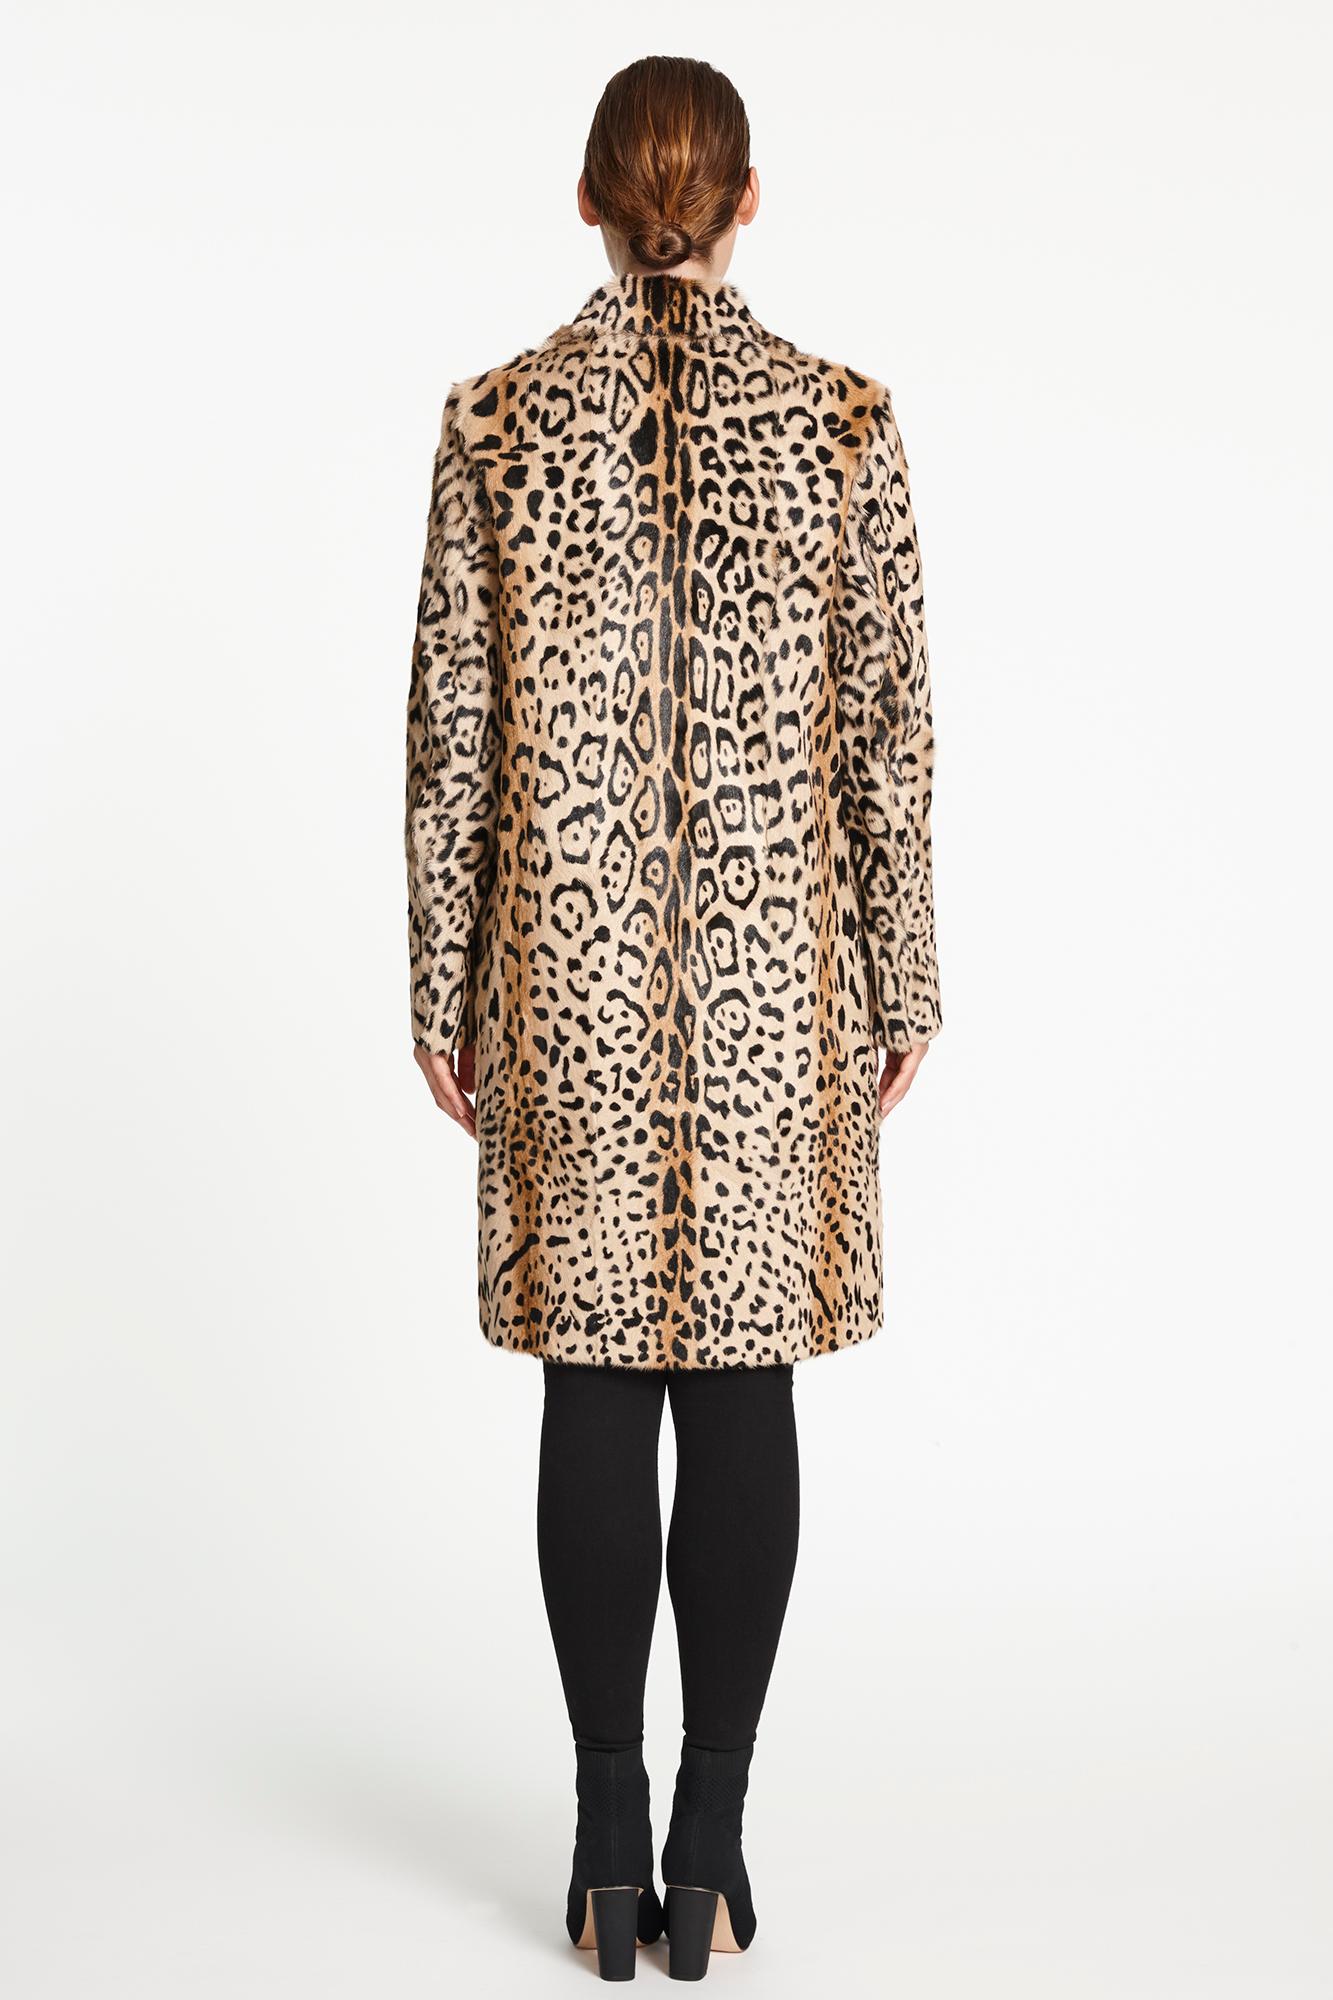 Verheyen London Leopard Print Coat in Natural Goat Hair Fur UK 8 - Brand New  3